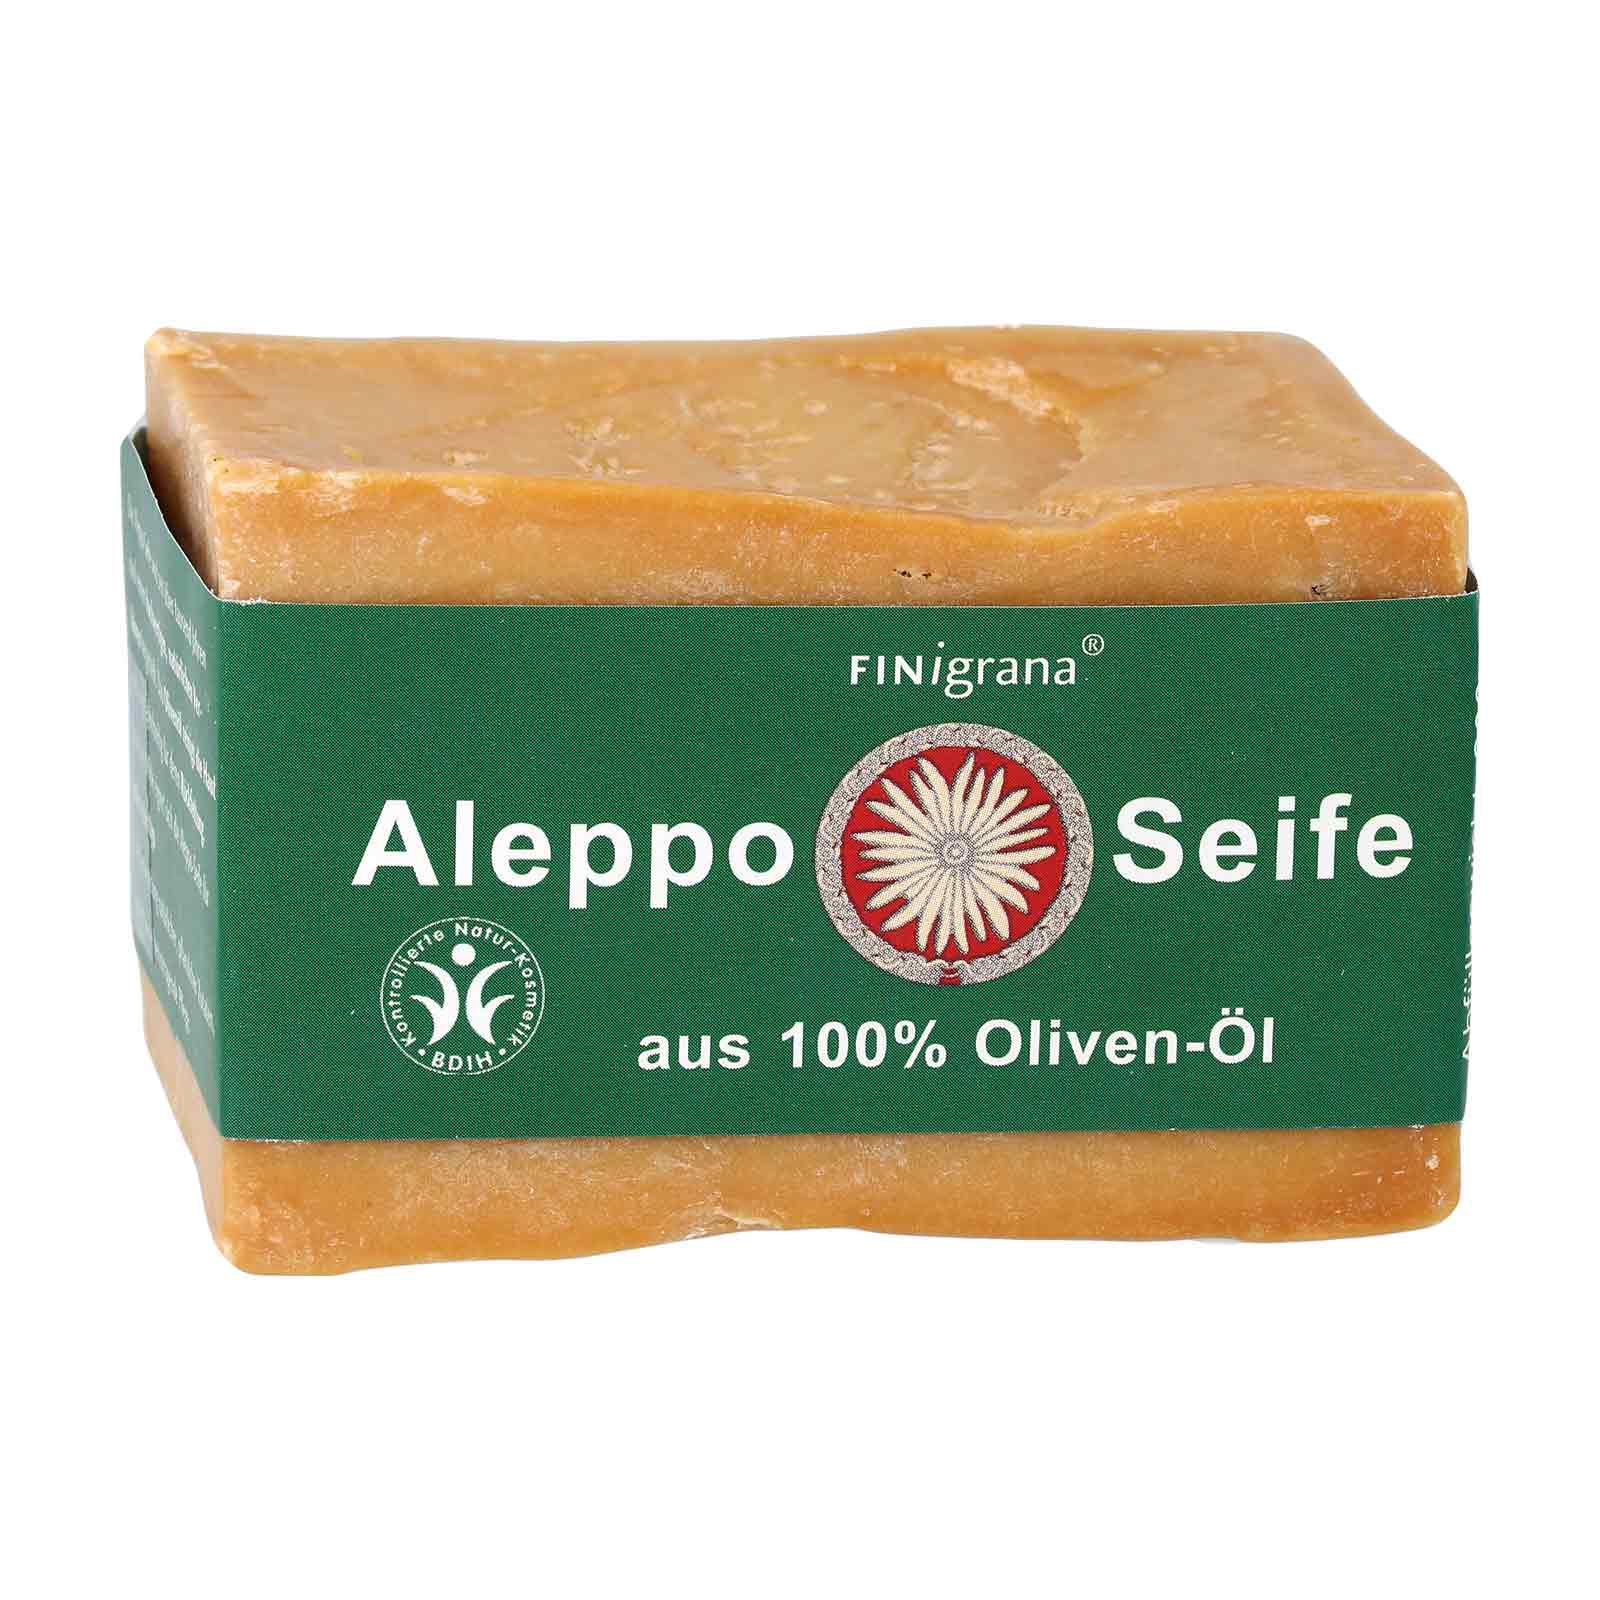 Finigrana Aleppo Seife 100 Reine Olivenolseife 0g Purenature